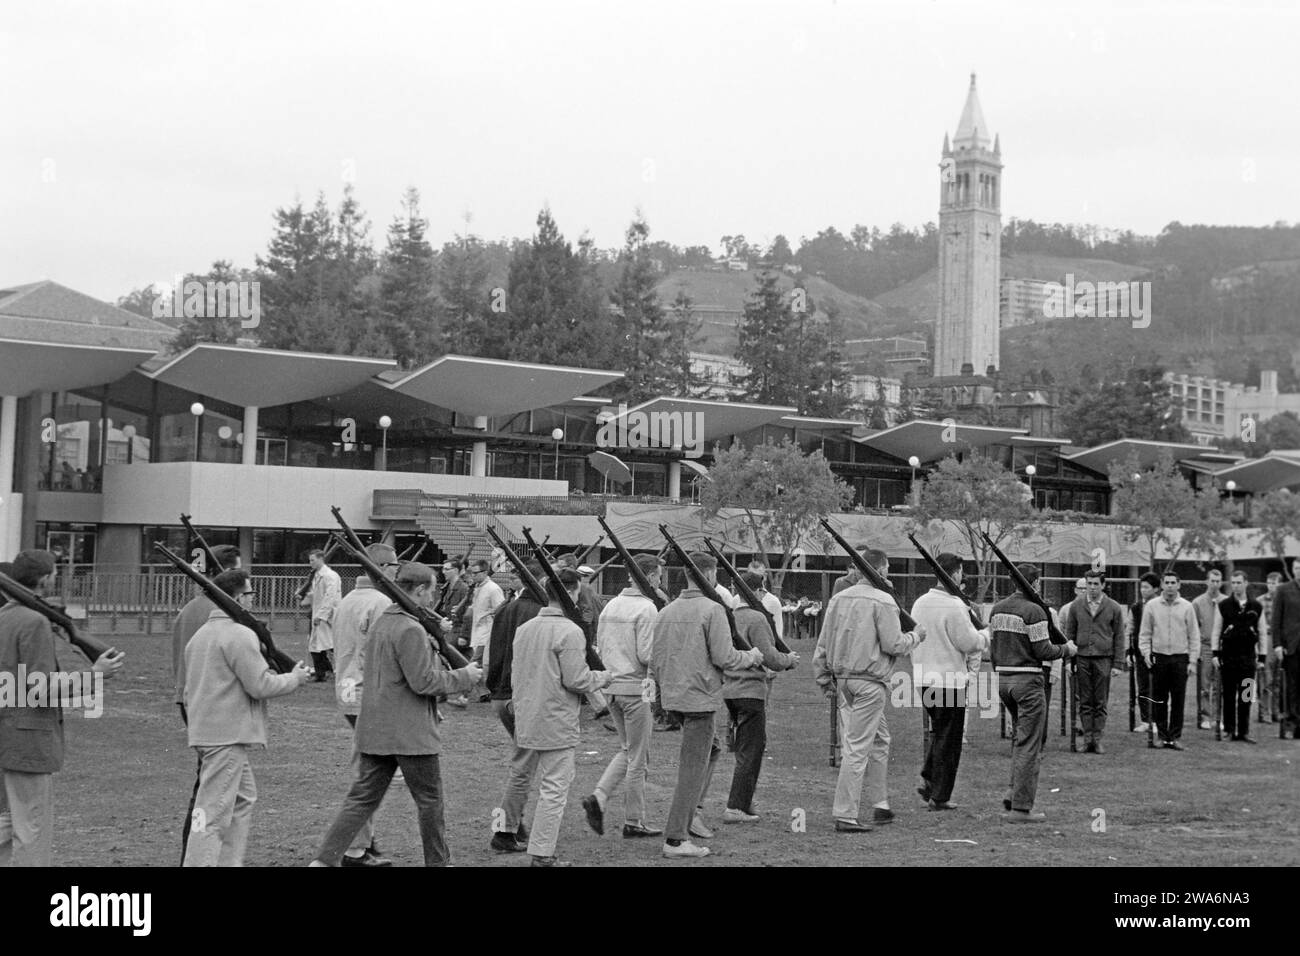 Männliche Studierende bei vormilitärischer Ausbildung, die Army übernimmt die Studiengebühren für spätere Offiziere, Berkeley 1962. Die Armee zahlt die Studiengebühren für zukünftige Offiziere, Berkeley 1962. Stockfoto